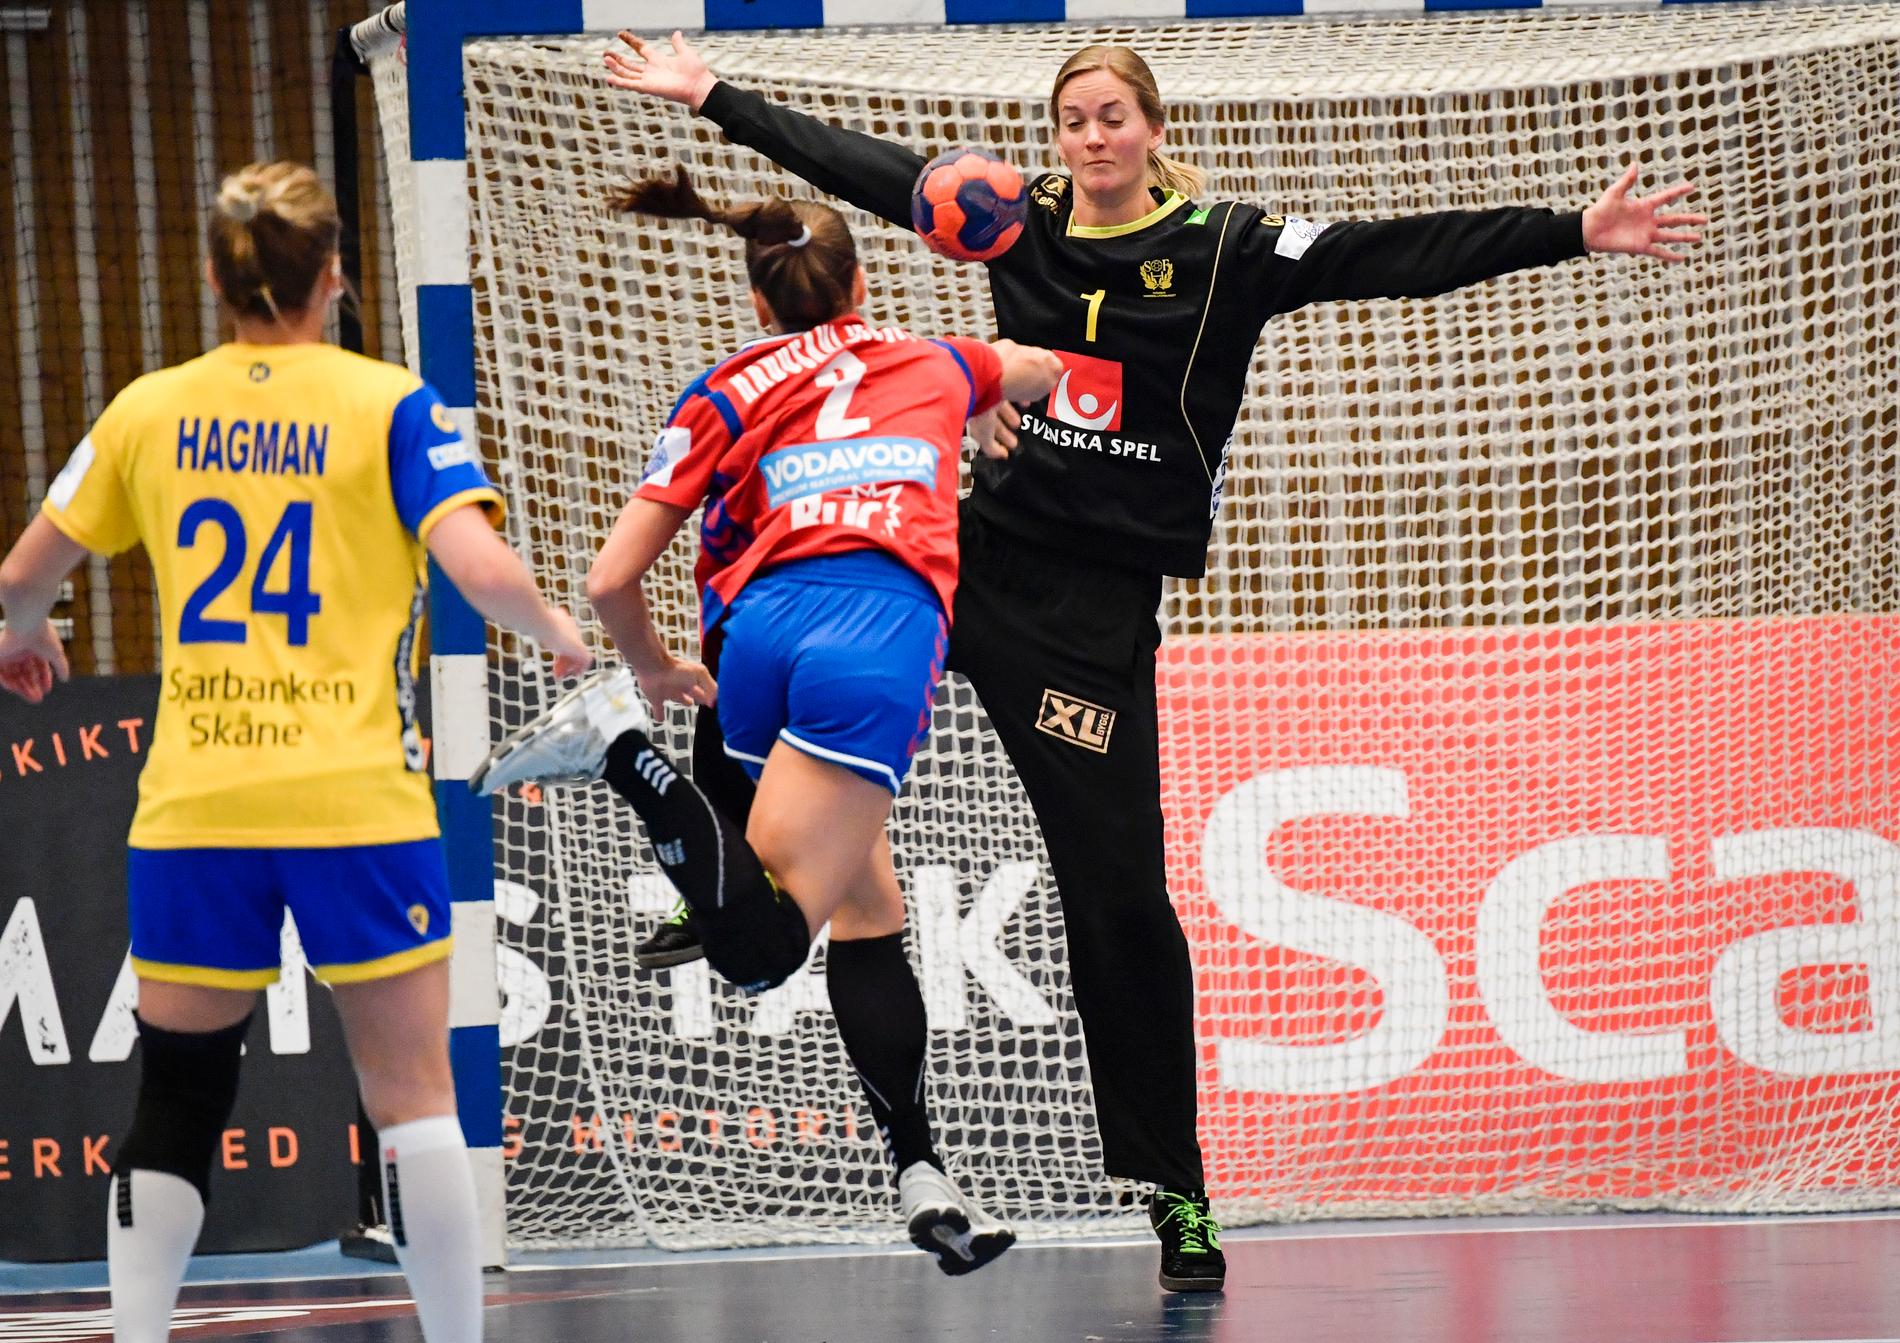 Det svenska handbollslandslaget, här med Johanna Bundsen i målet, EM.laddar i Trollhättan med matcher mot Ungern. Arkivbild.